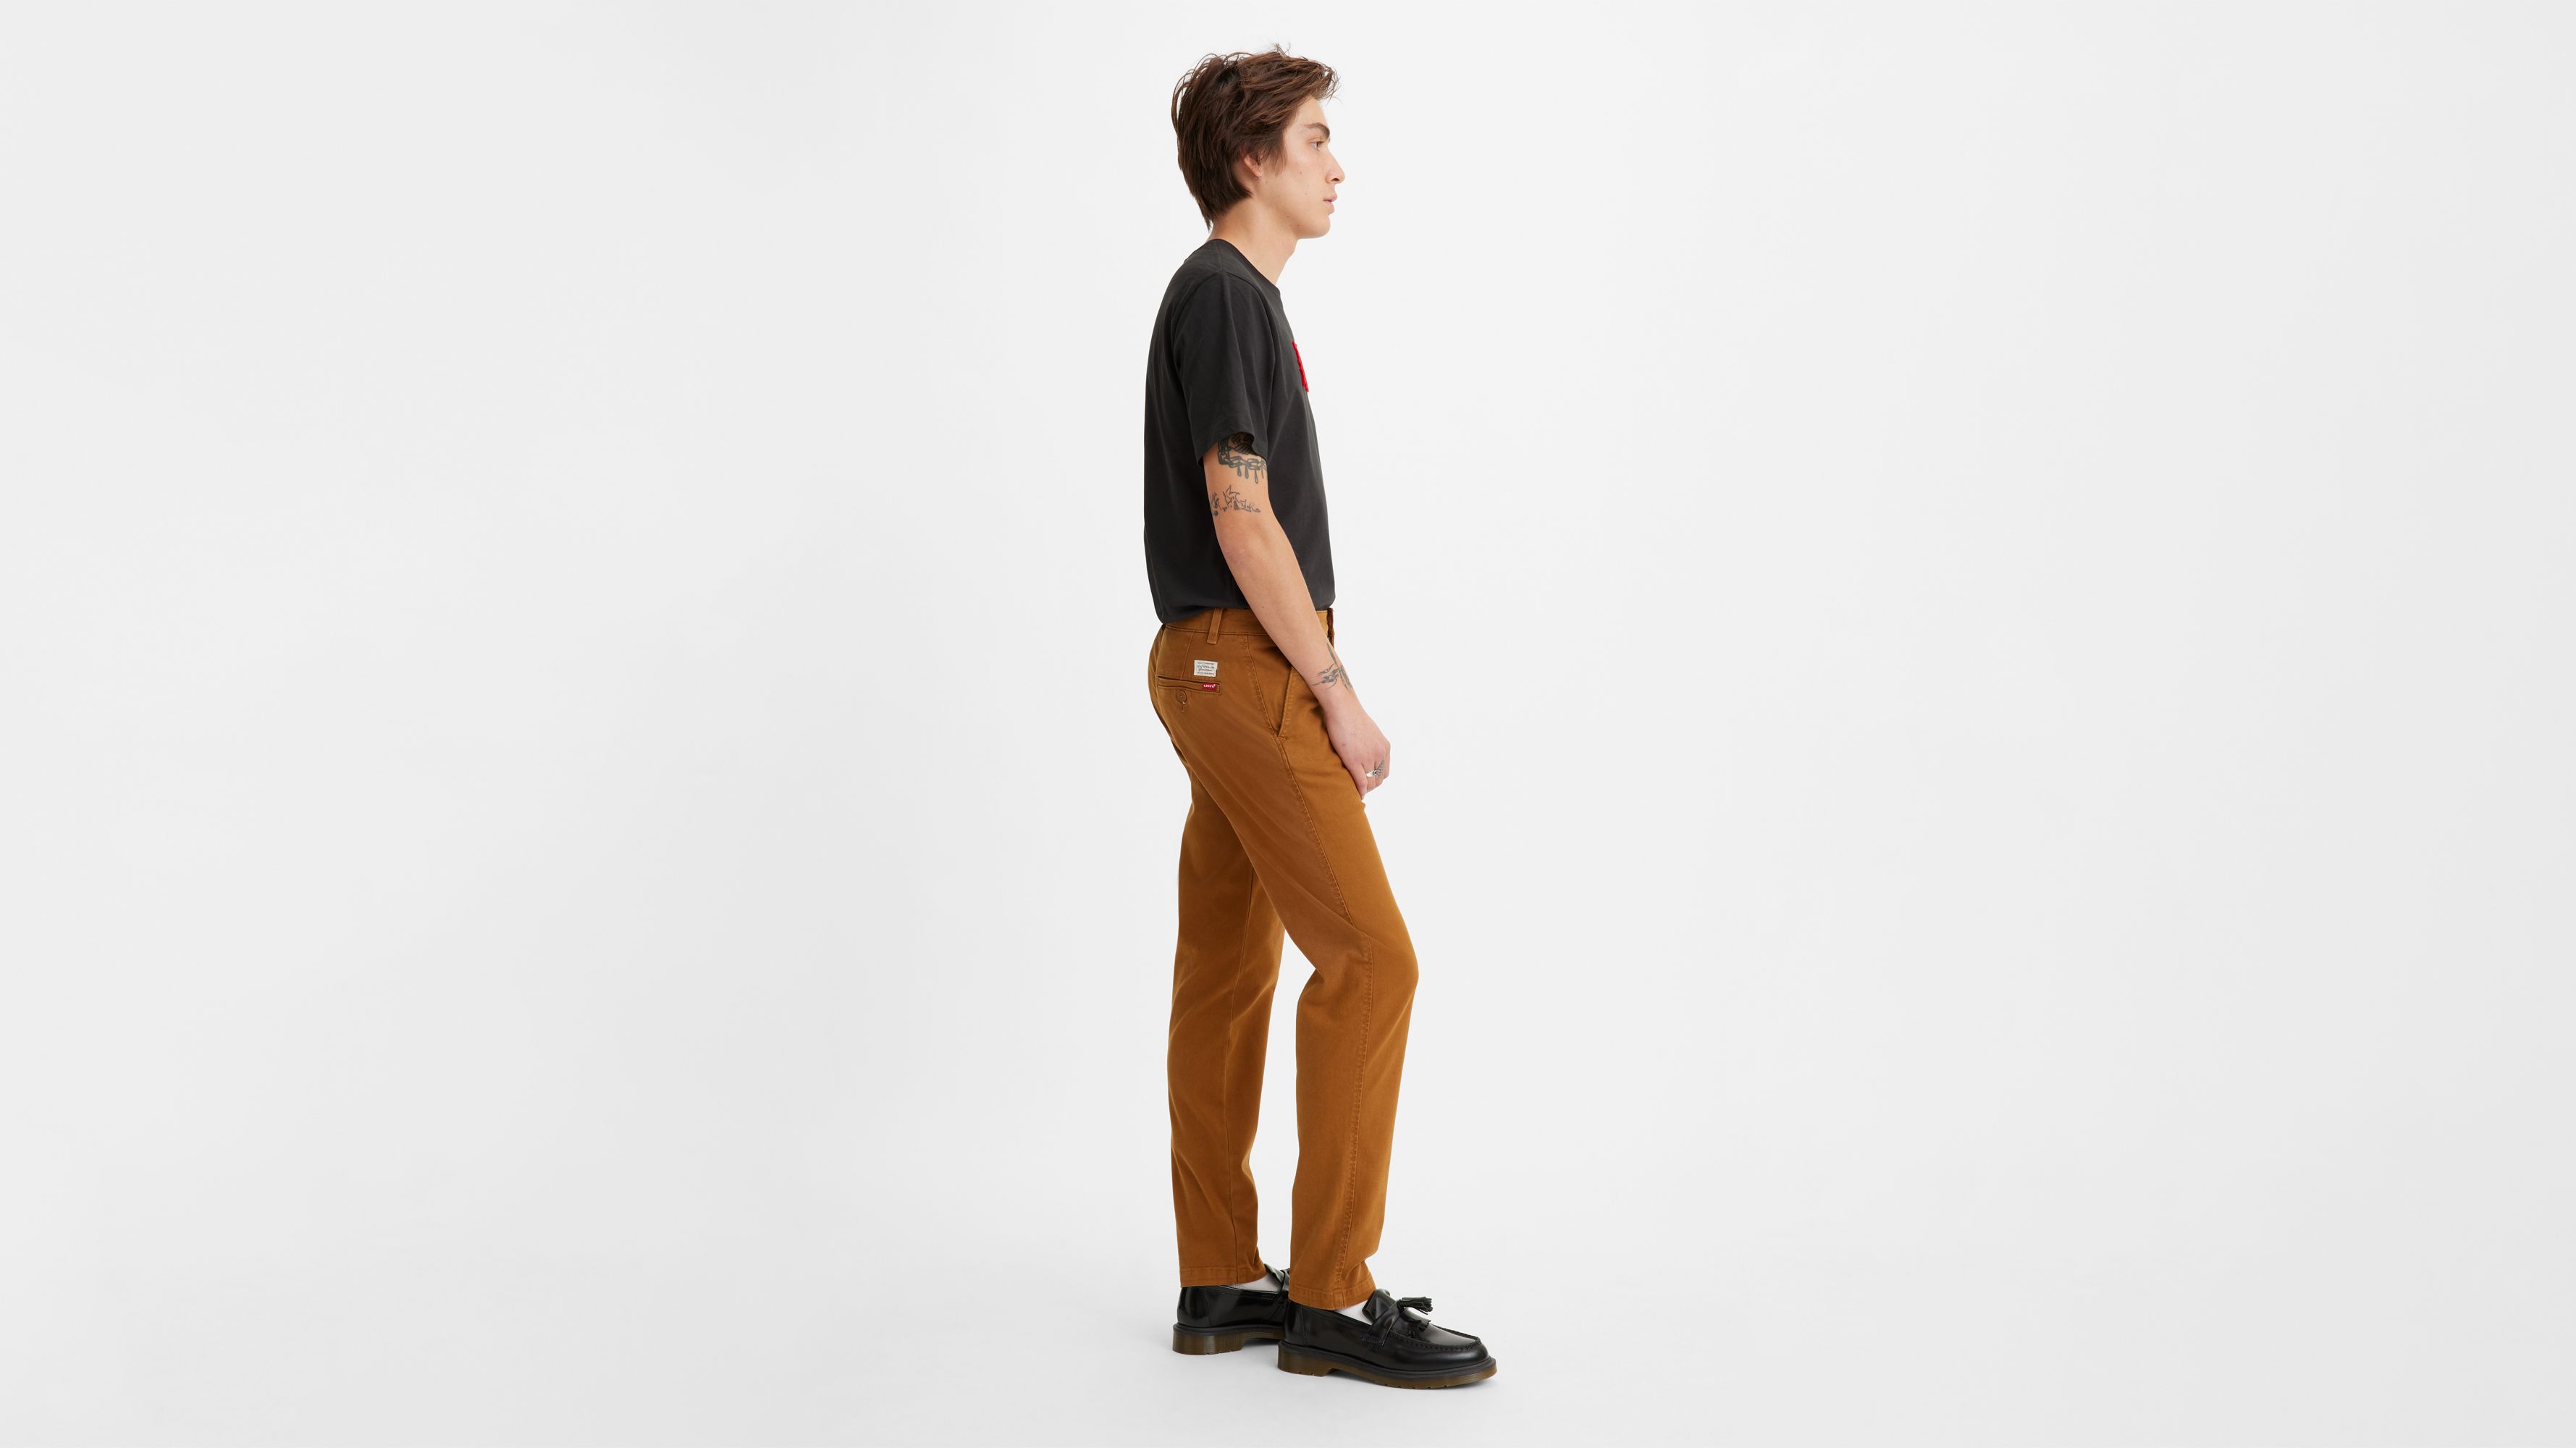 Levi's® XX Chino Standard Taper Fit Men's Pants